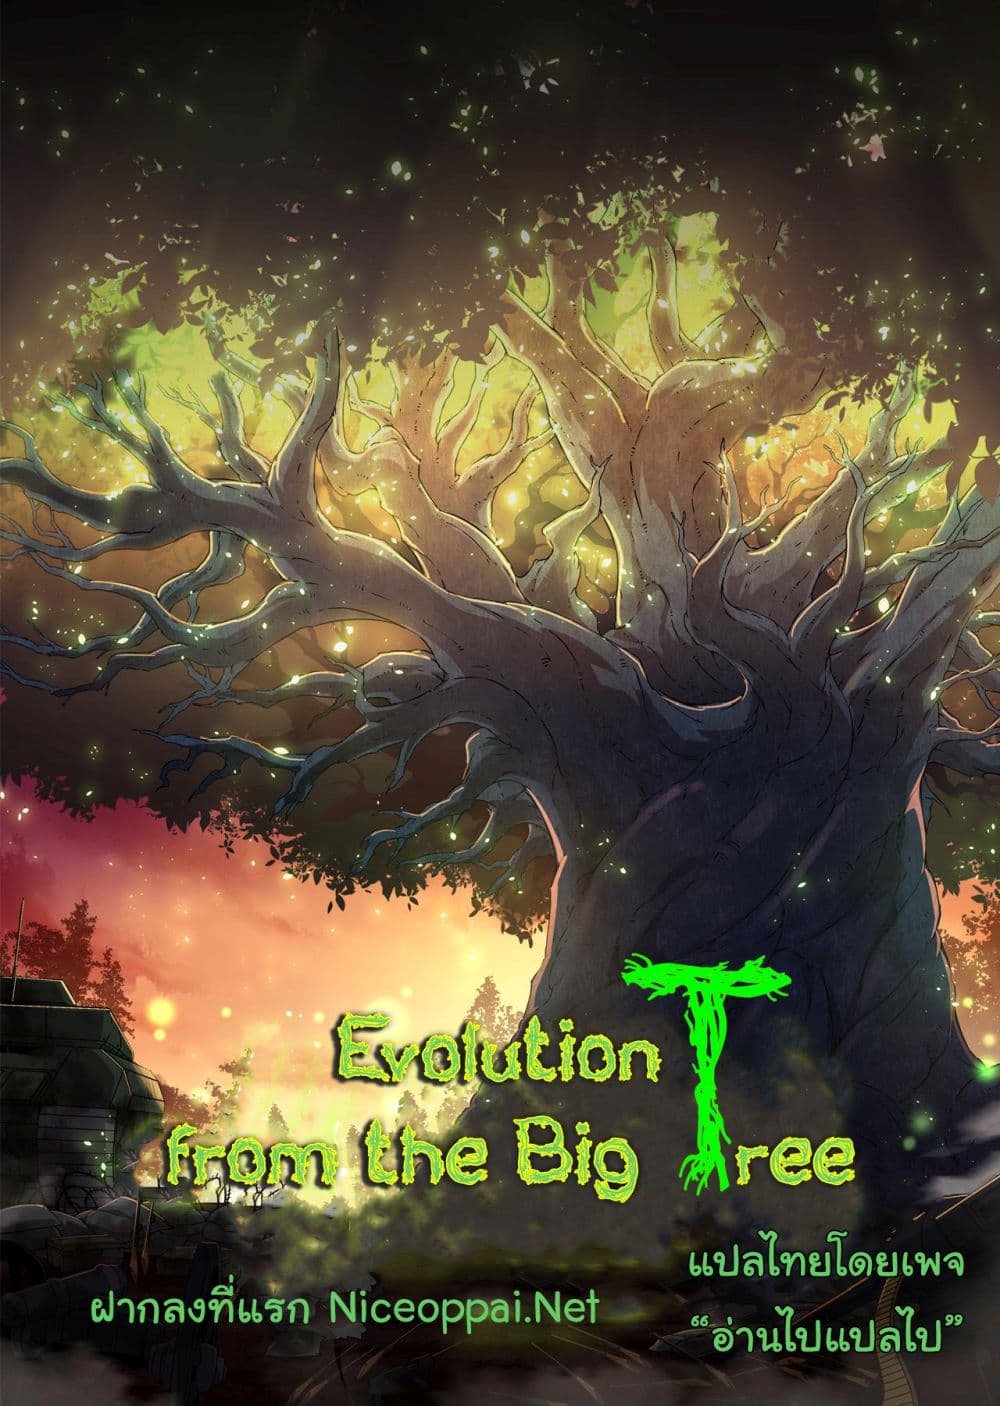 Evolution from the Big Tree Ã Â¸â€¢Ã Â¸Â­Ã Â¸â„¢Ã Â¸â€”Ã Â¸ÂµÃ Â¹Ë† 25 (55)